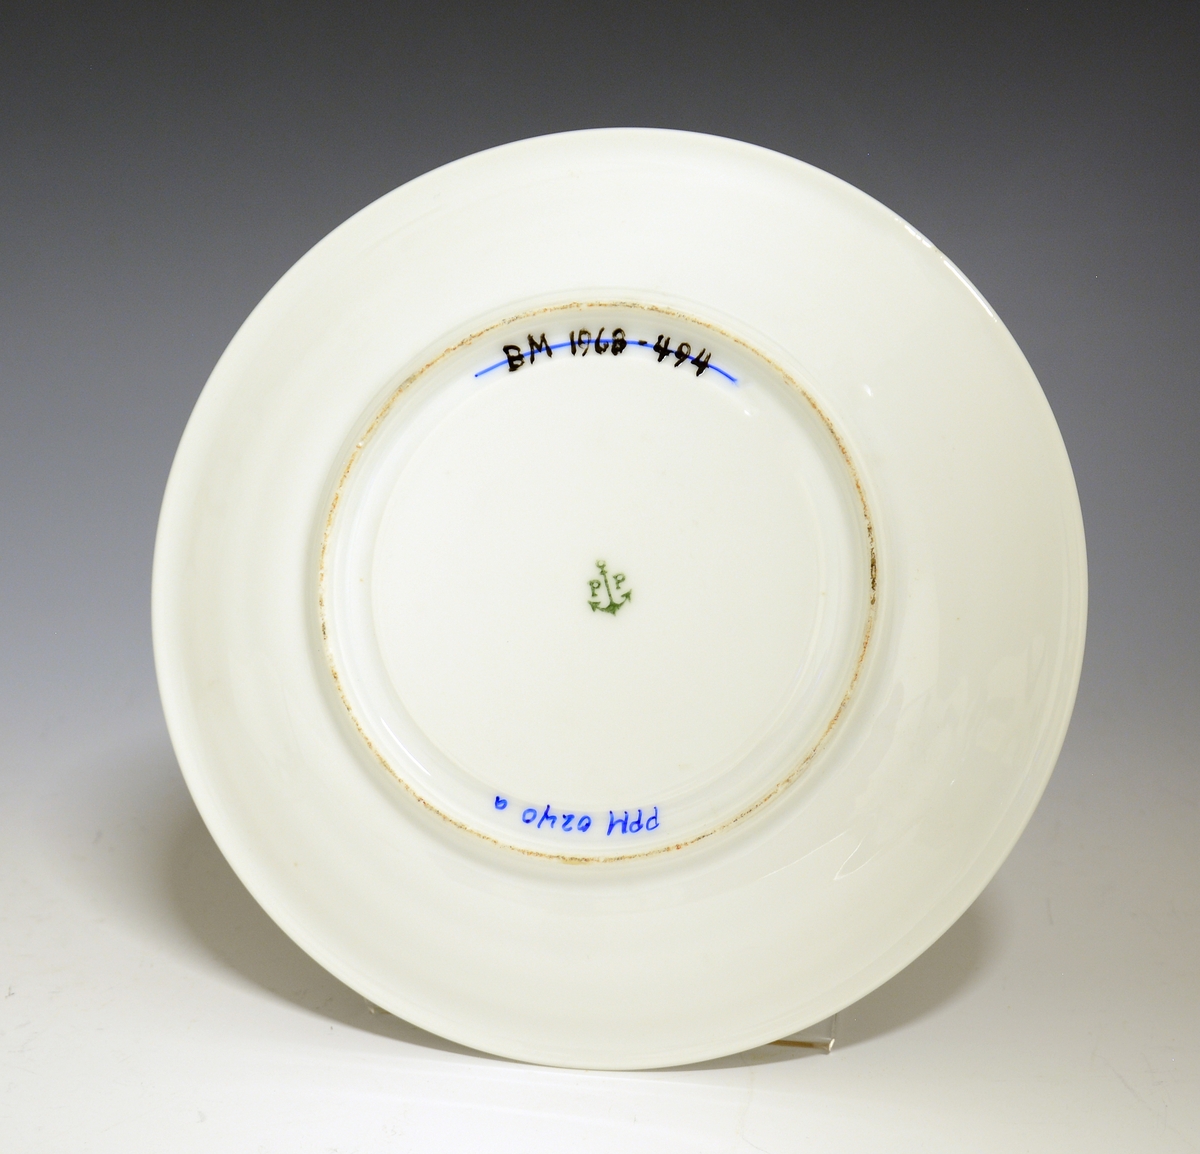 Prot: Smørdåse av porselen. Sylindrisk beholder fast på skål med fire konkave, sirkulære avtrappinger til en utbrettet kant. Halvkuleformet lokk med avtrappet topp som har halvkuleformet lokkgrep. Hvit glasur uten dekor. Nora Gulbrandsens modell 1875.